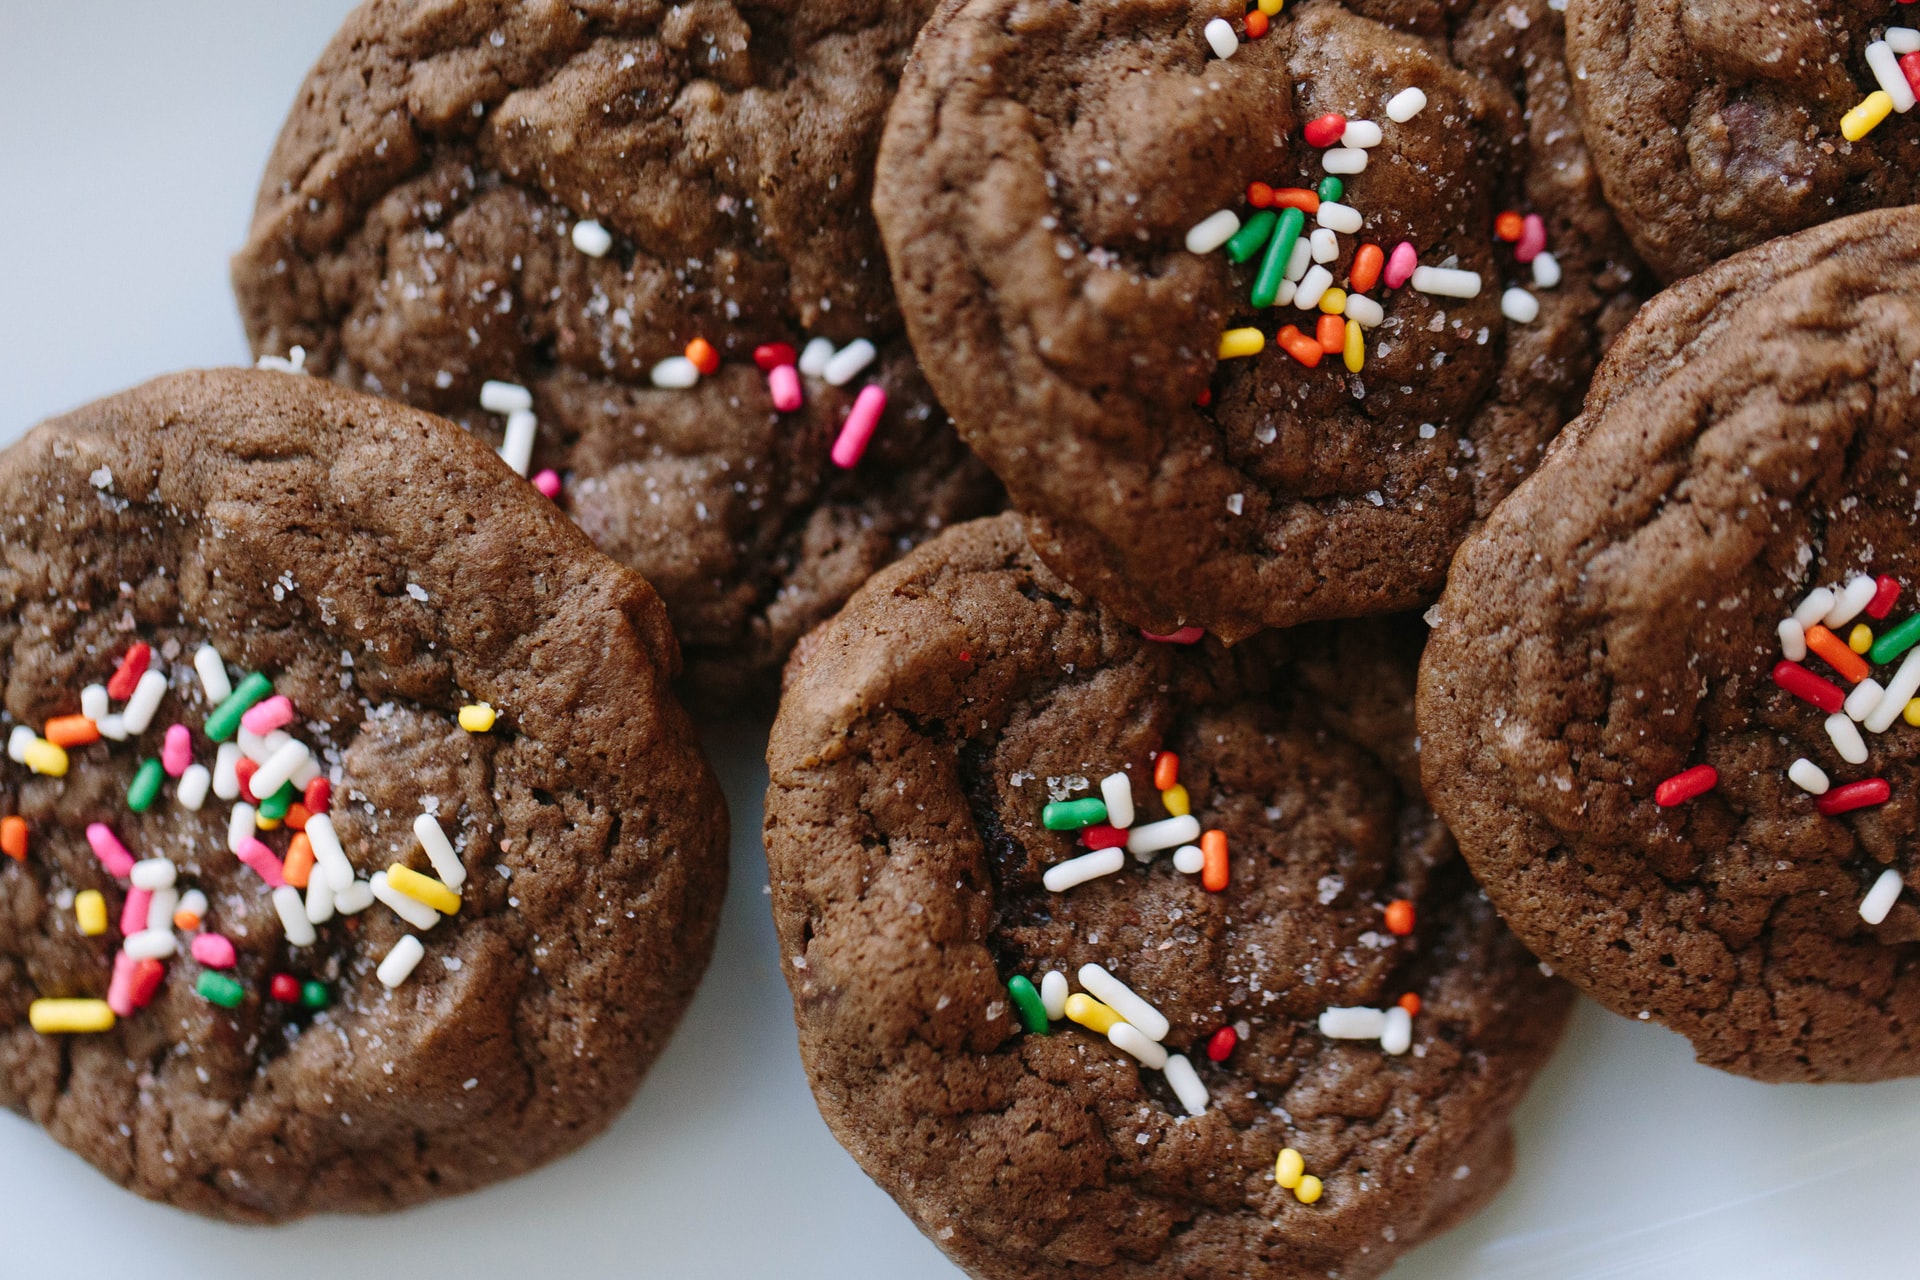 cookies al cioccolato e zenzero